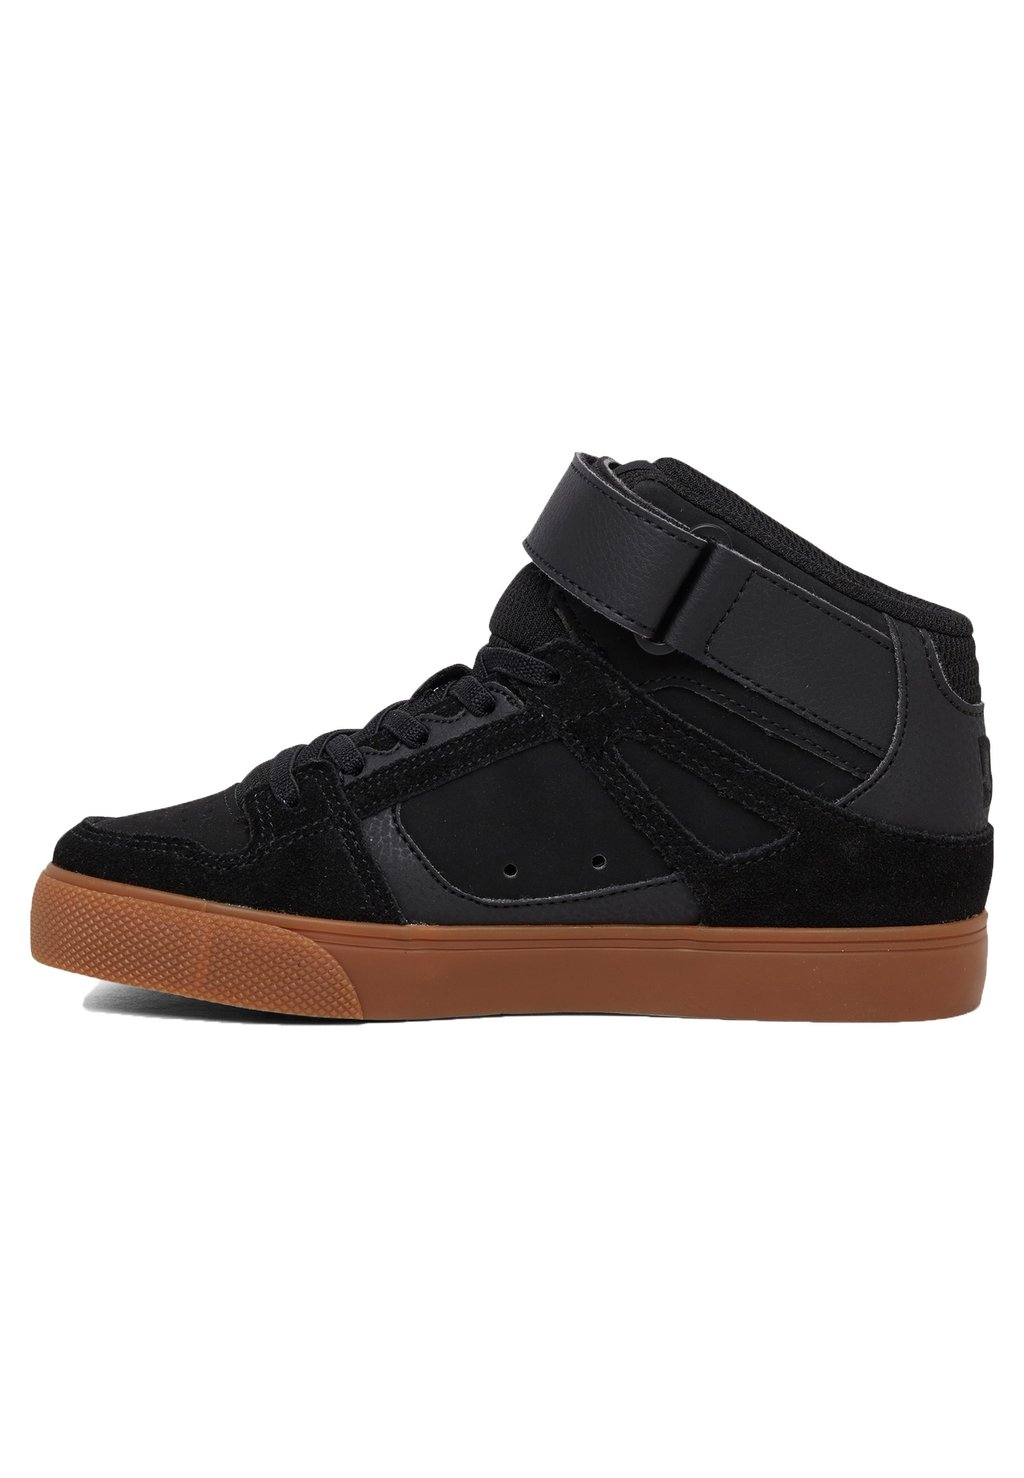 Низкие кроссовки DC Shoes, резинка bgm черная кроссовки reach dc цвет black black gum